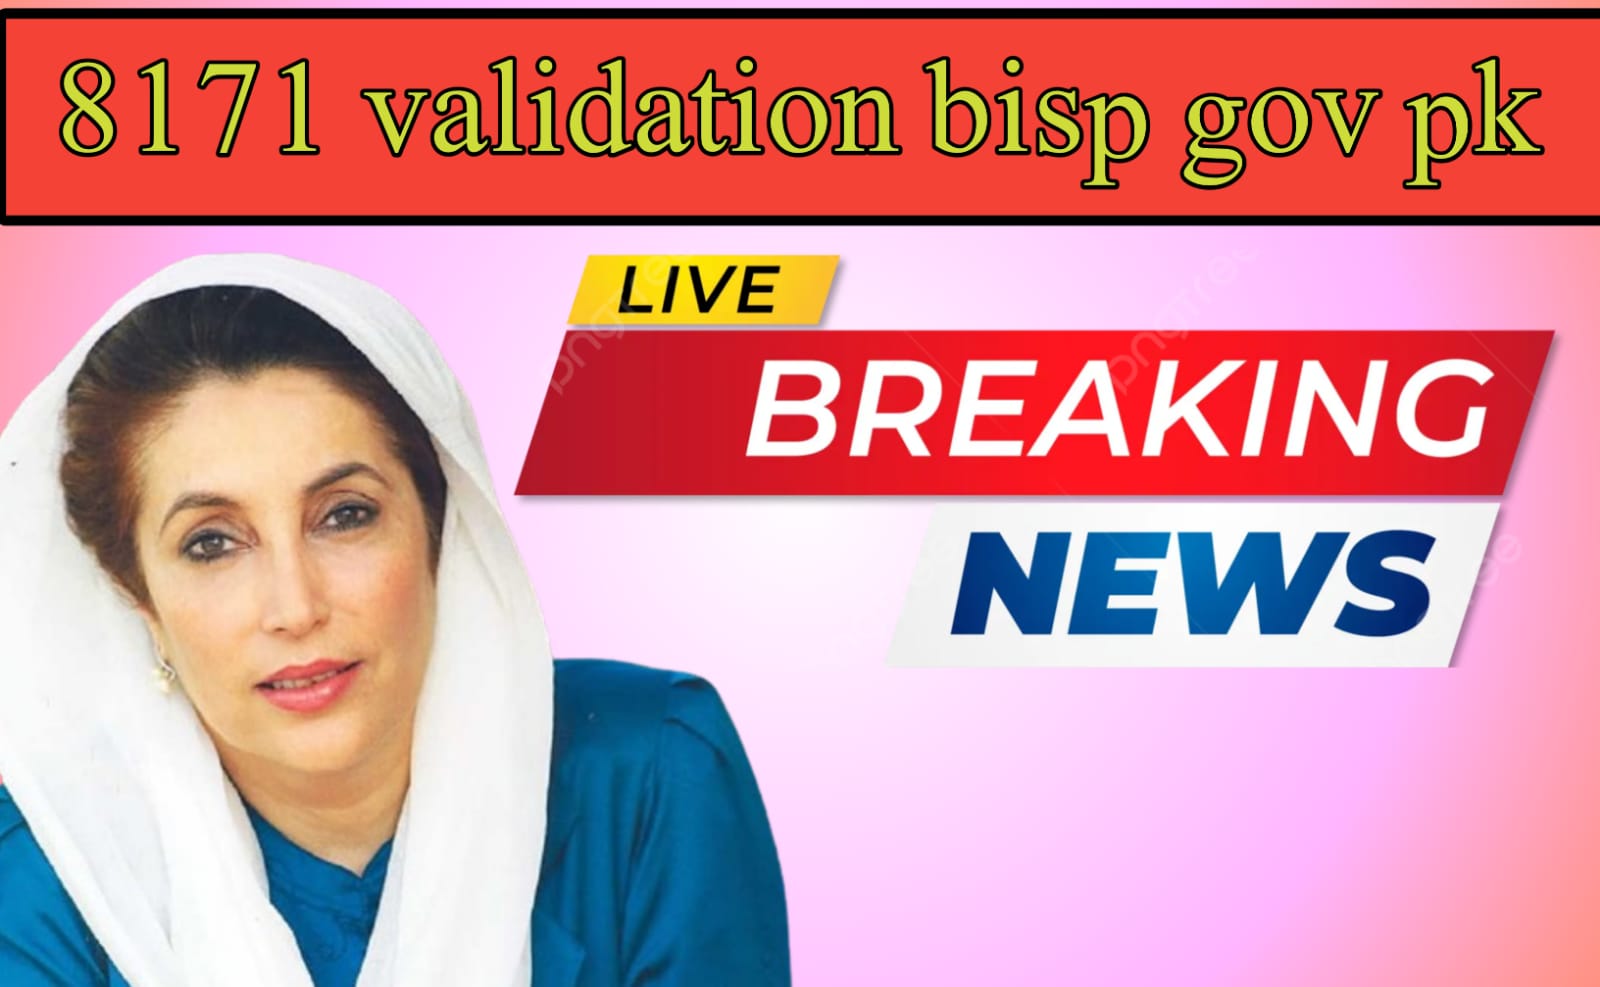 8171 validation bisp gov pk